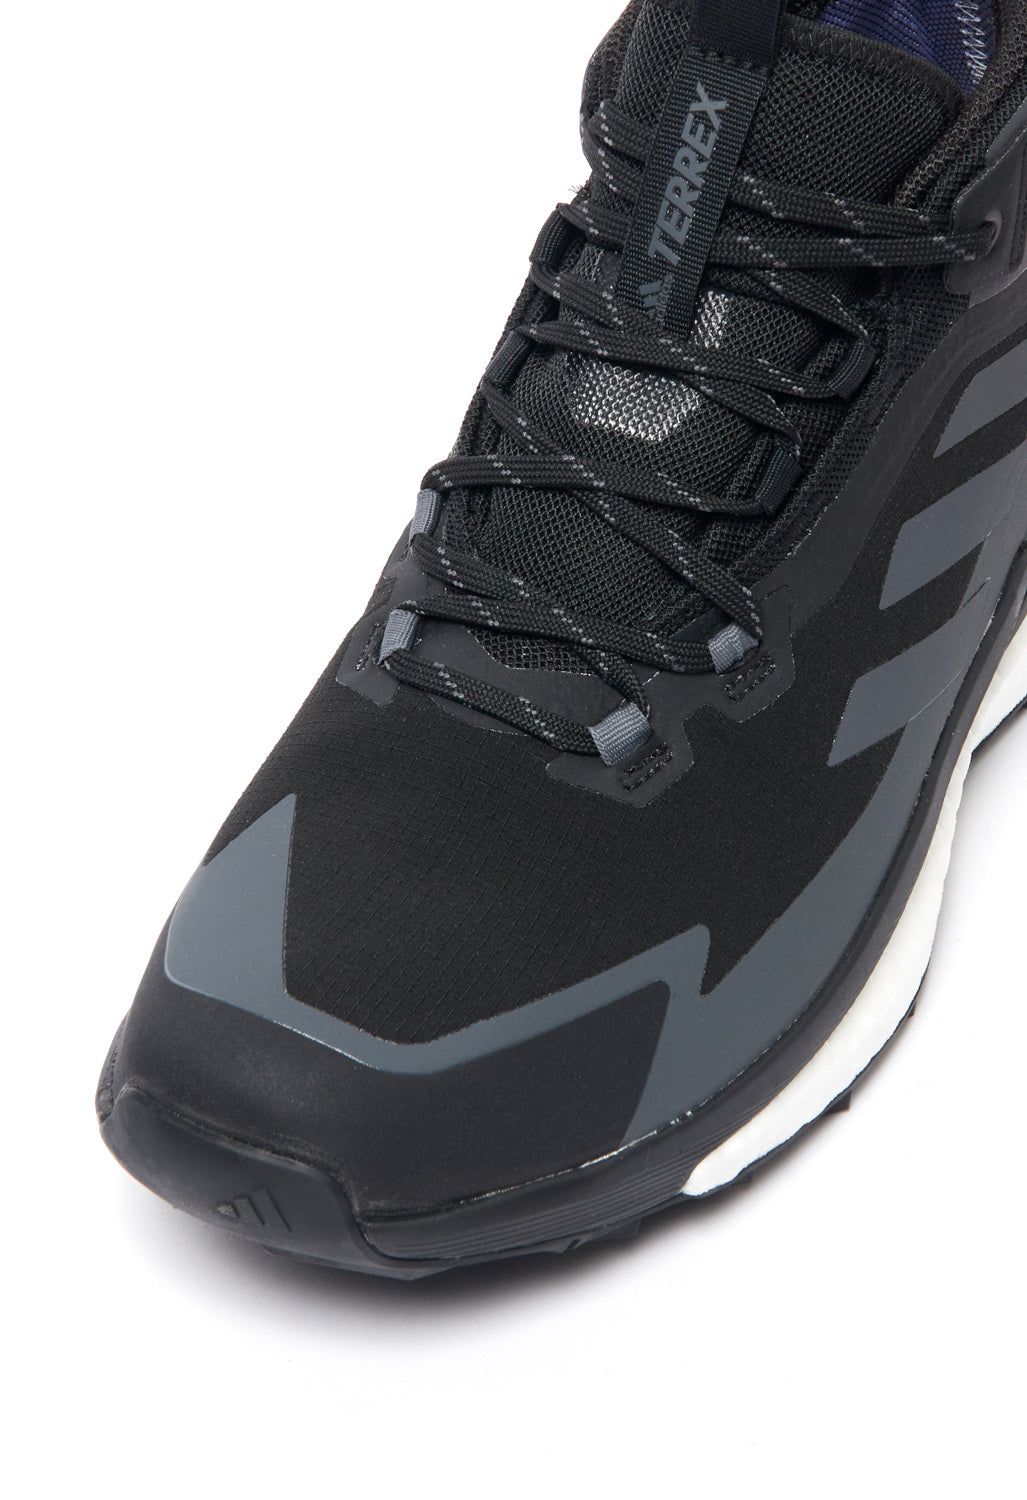 adidas TERREX Free Hiker 2 GORE-TEX Men's Boots - Core Black/Grey Six